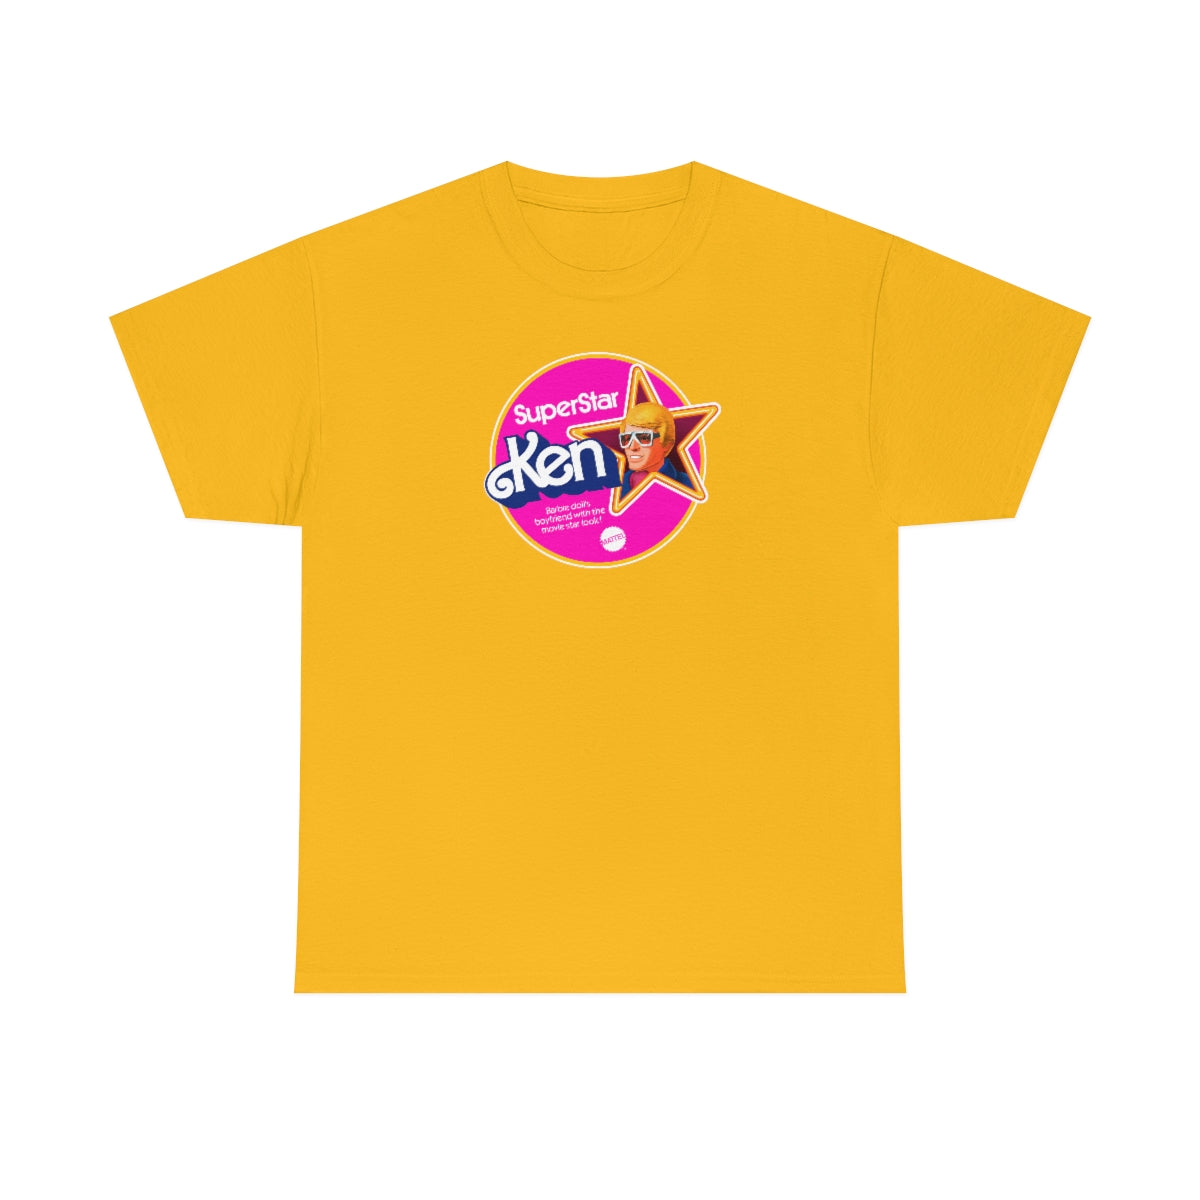 Superstar Ken T-Shirt